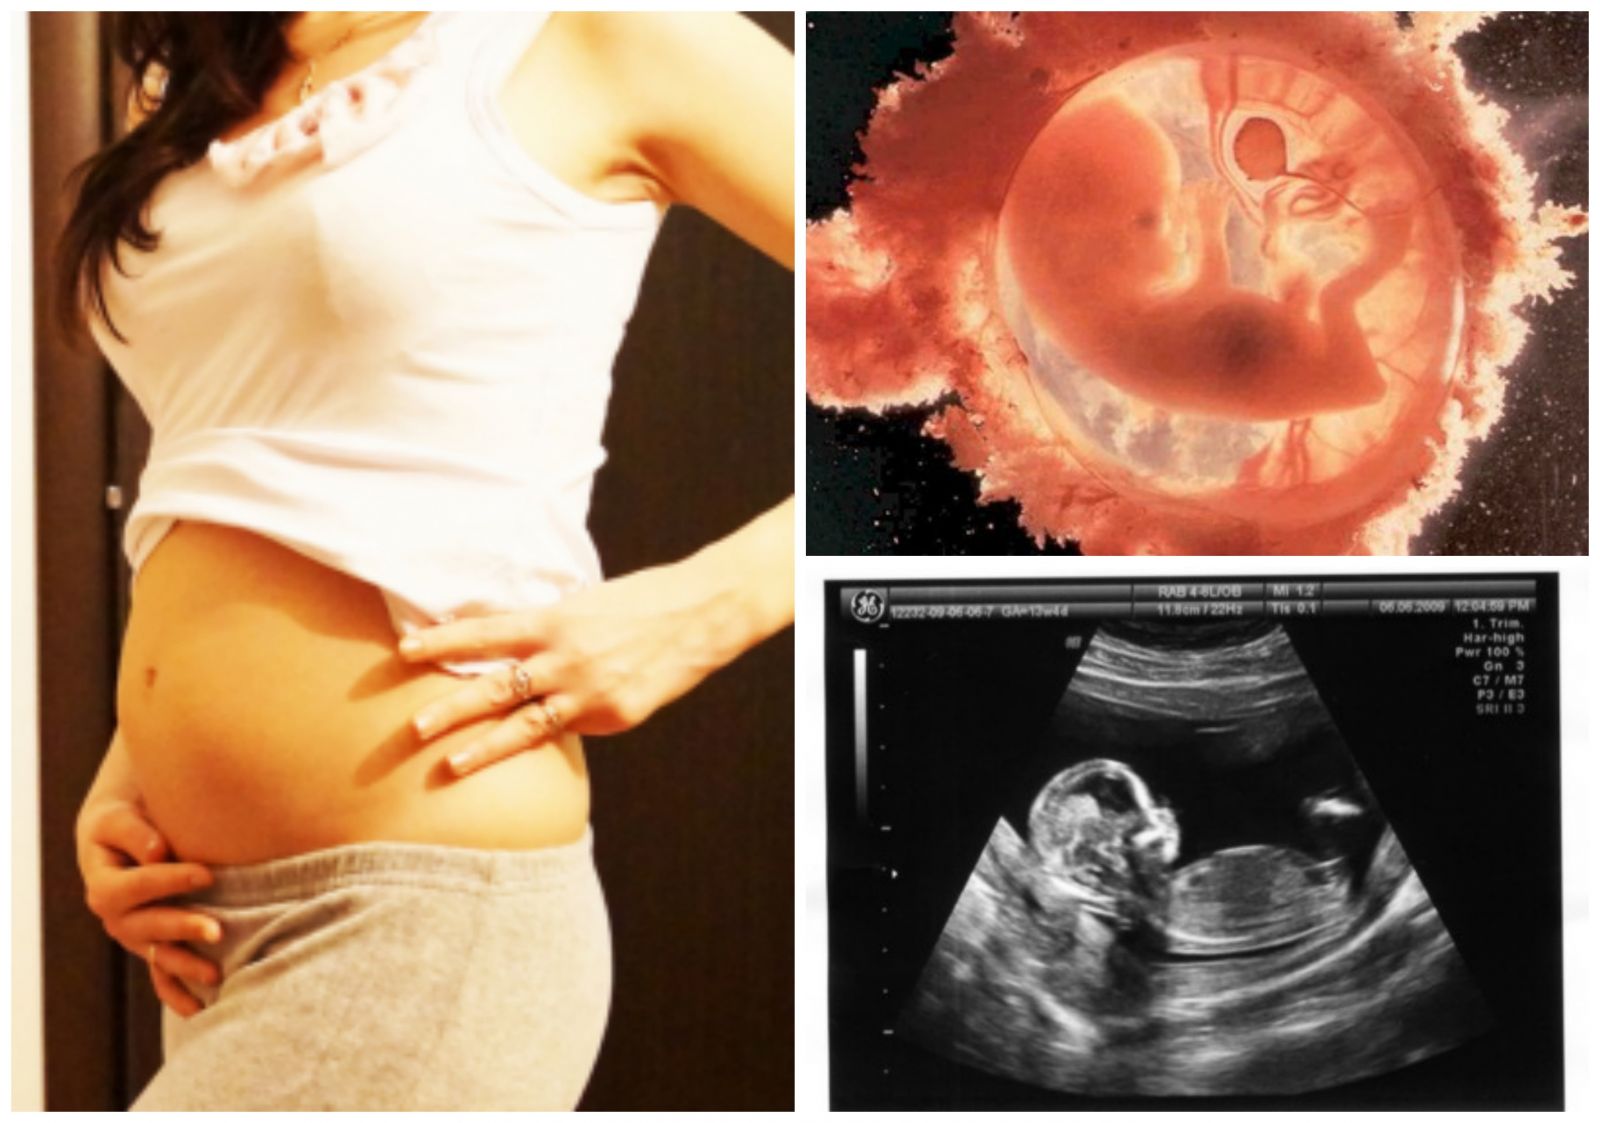 13 неделя даты. Ребенок на 13 неделе беременности УЗИ. Размер эмбриона в 13 недель беременности. 13 Недель беременности фото плода на УЗИ.